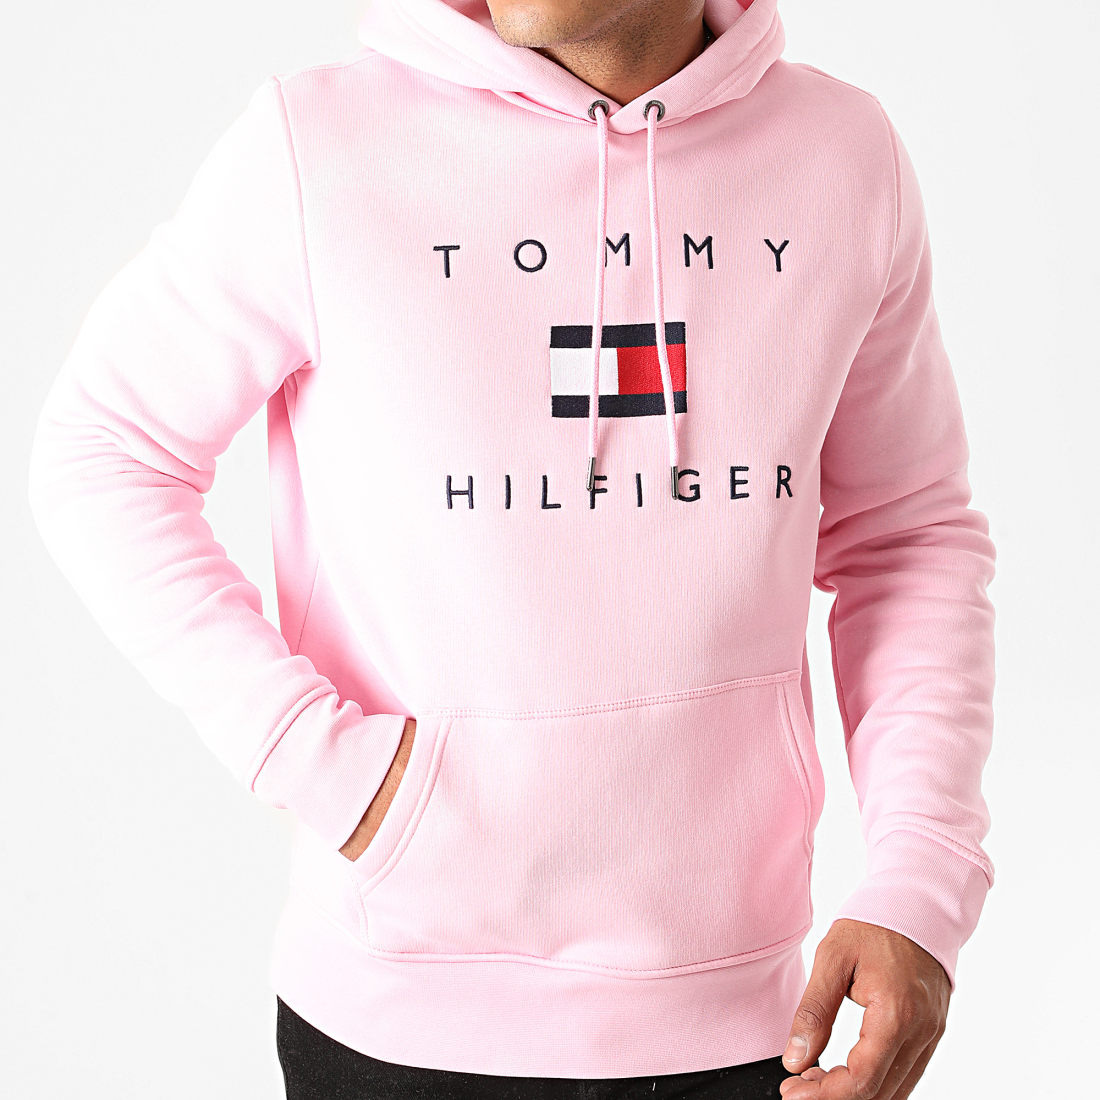 Tommy Hilfiger Homme Sale Online, 30% - motorhomevoyager.co.uk